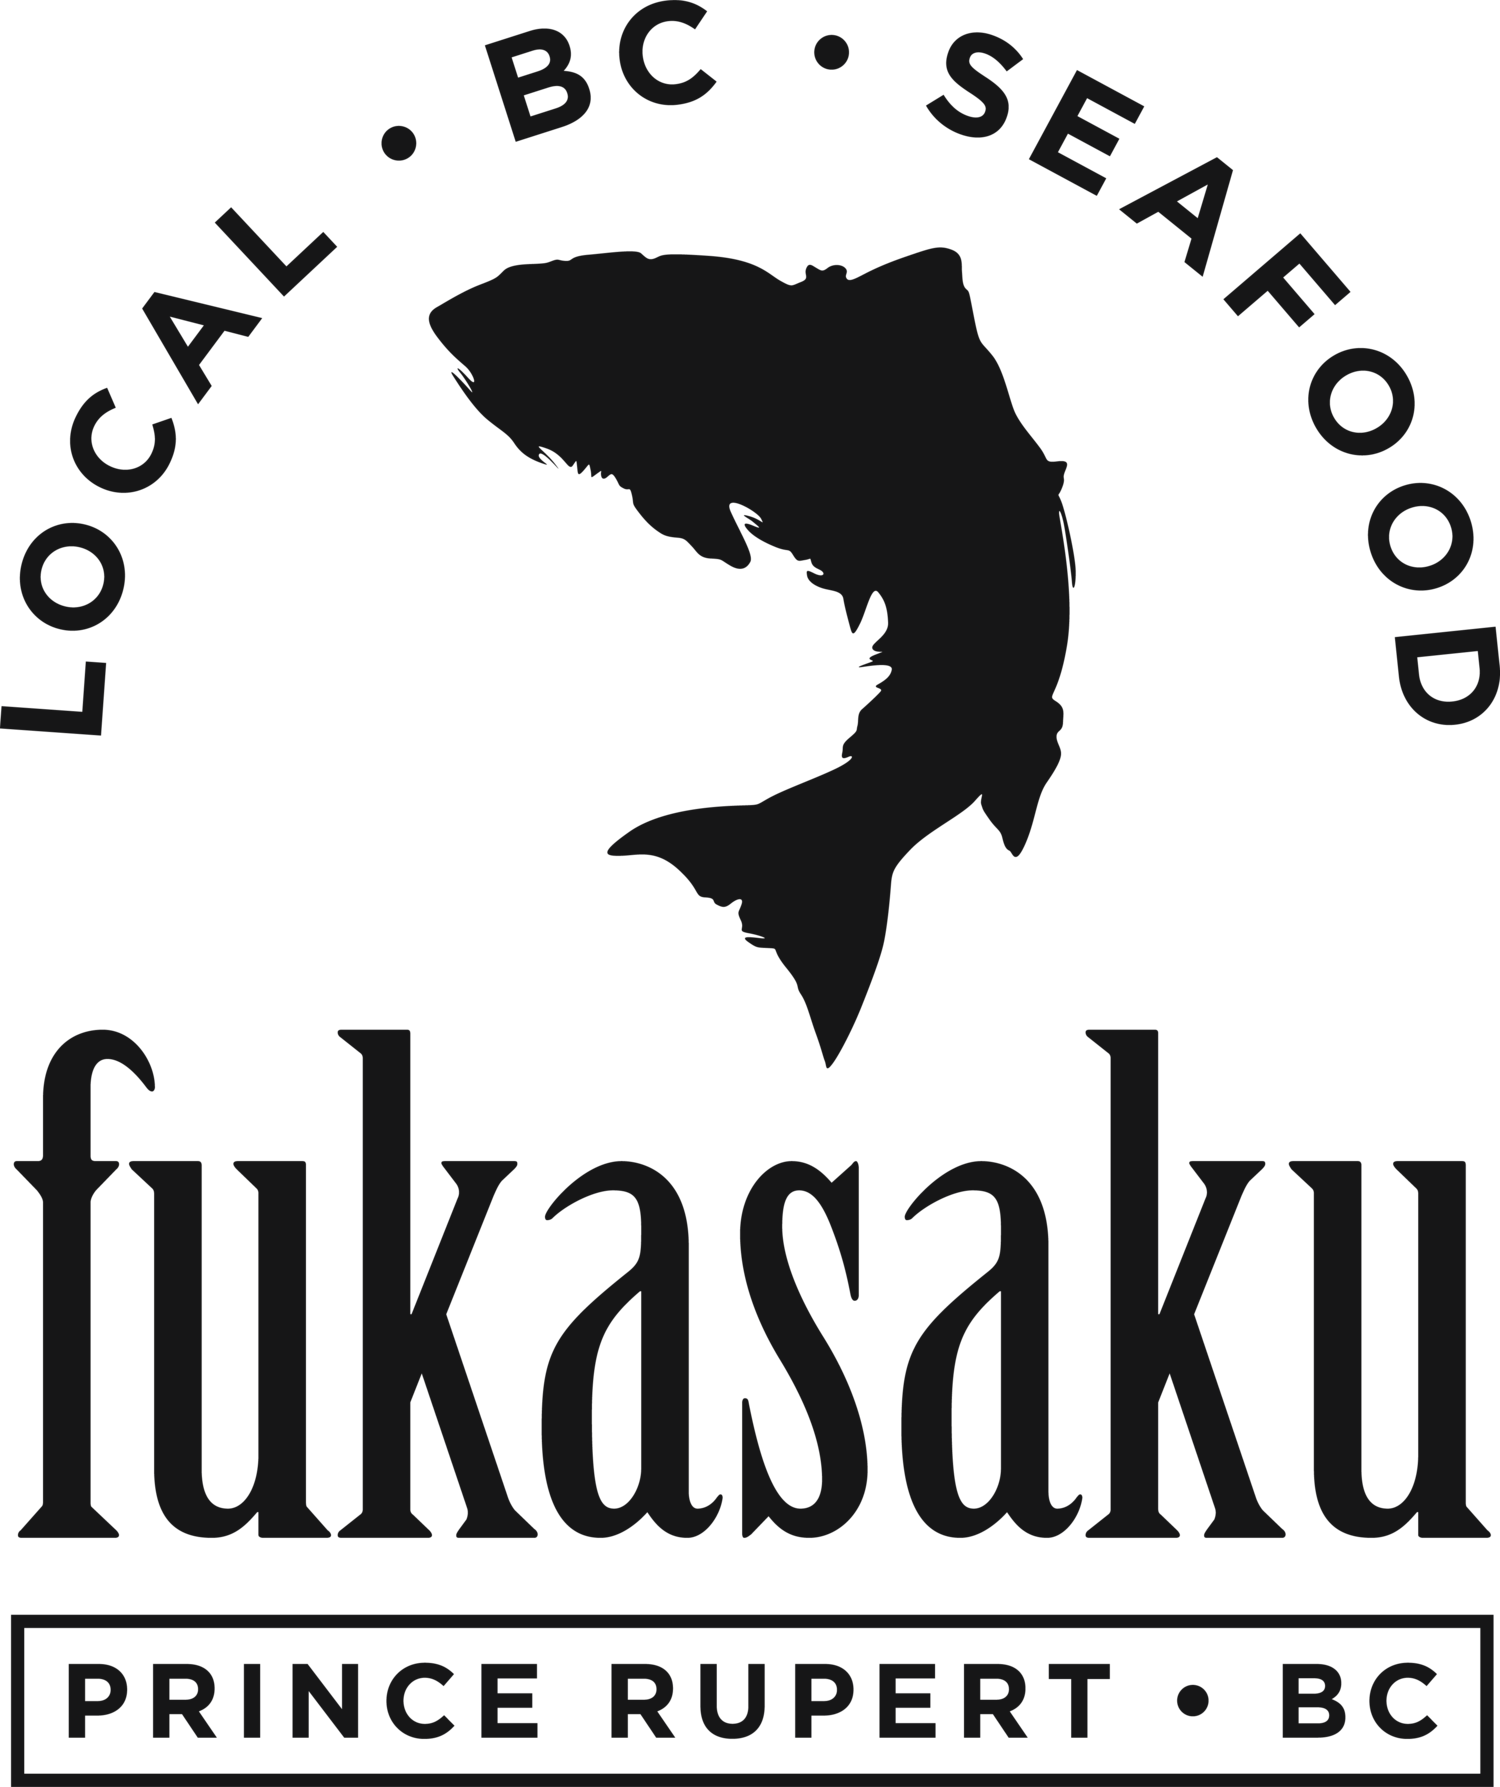 Fukasaku